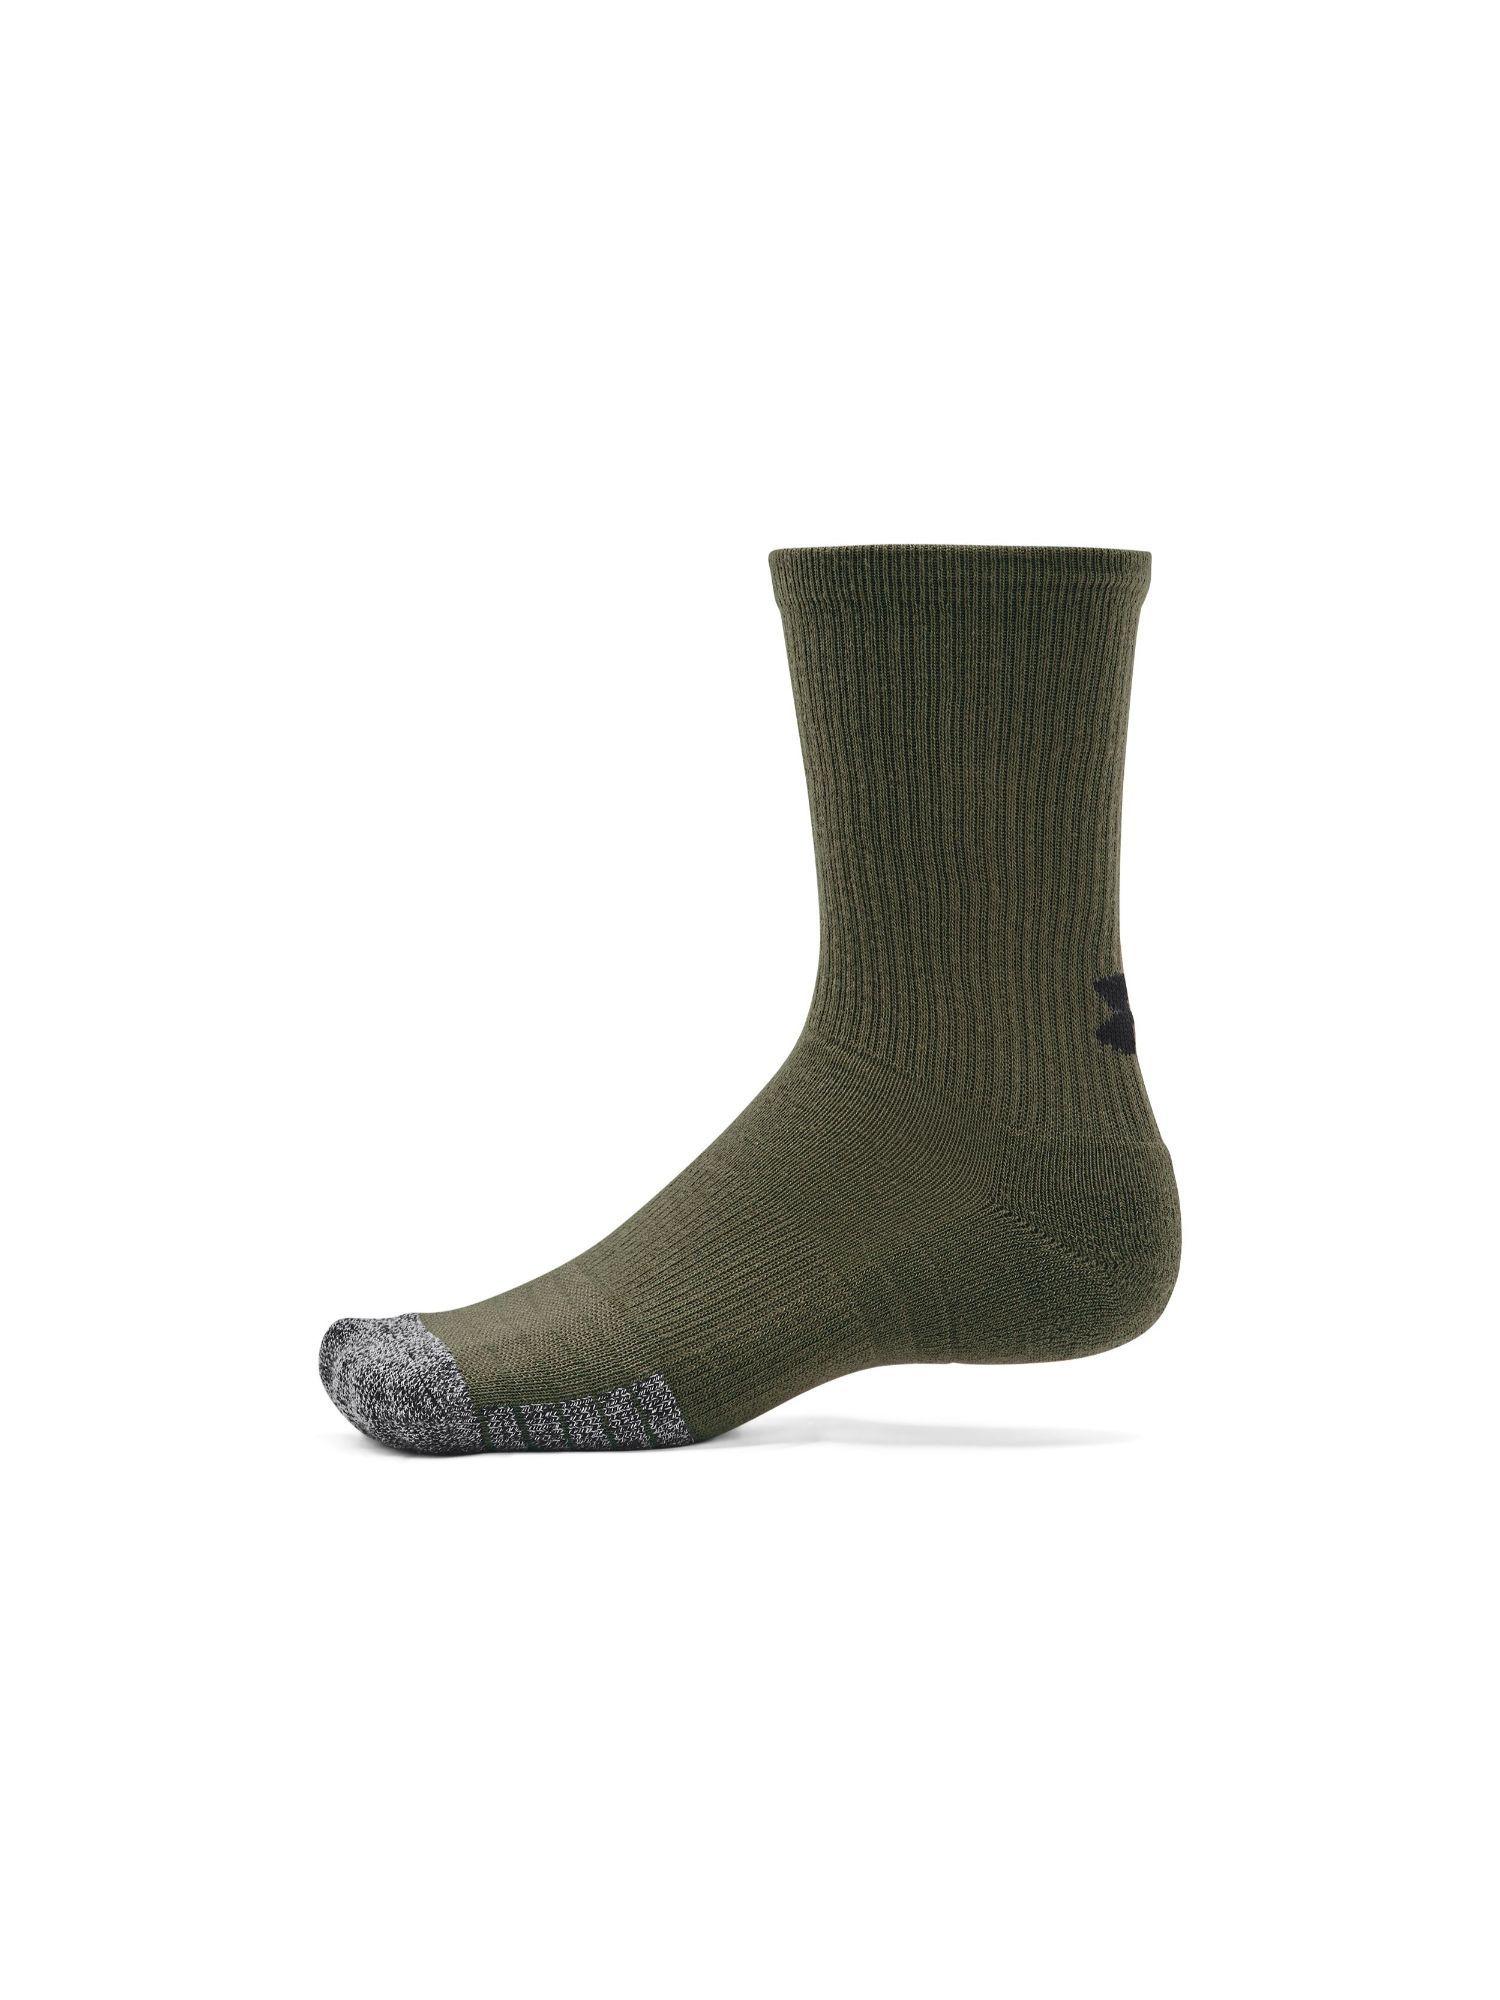 unisex heat gear crew socks - green (pack of 3)